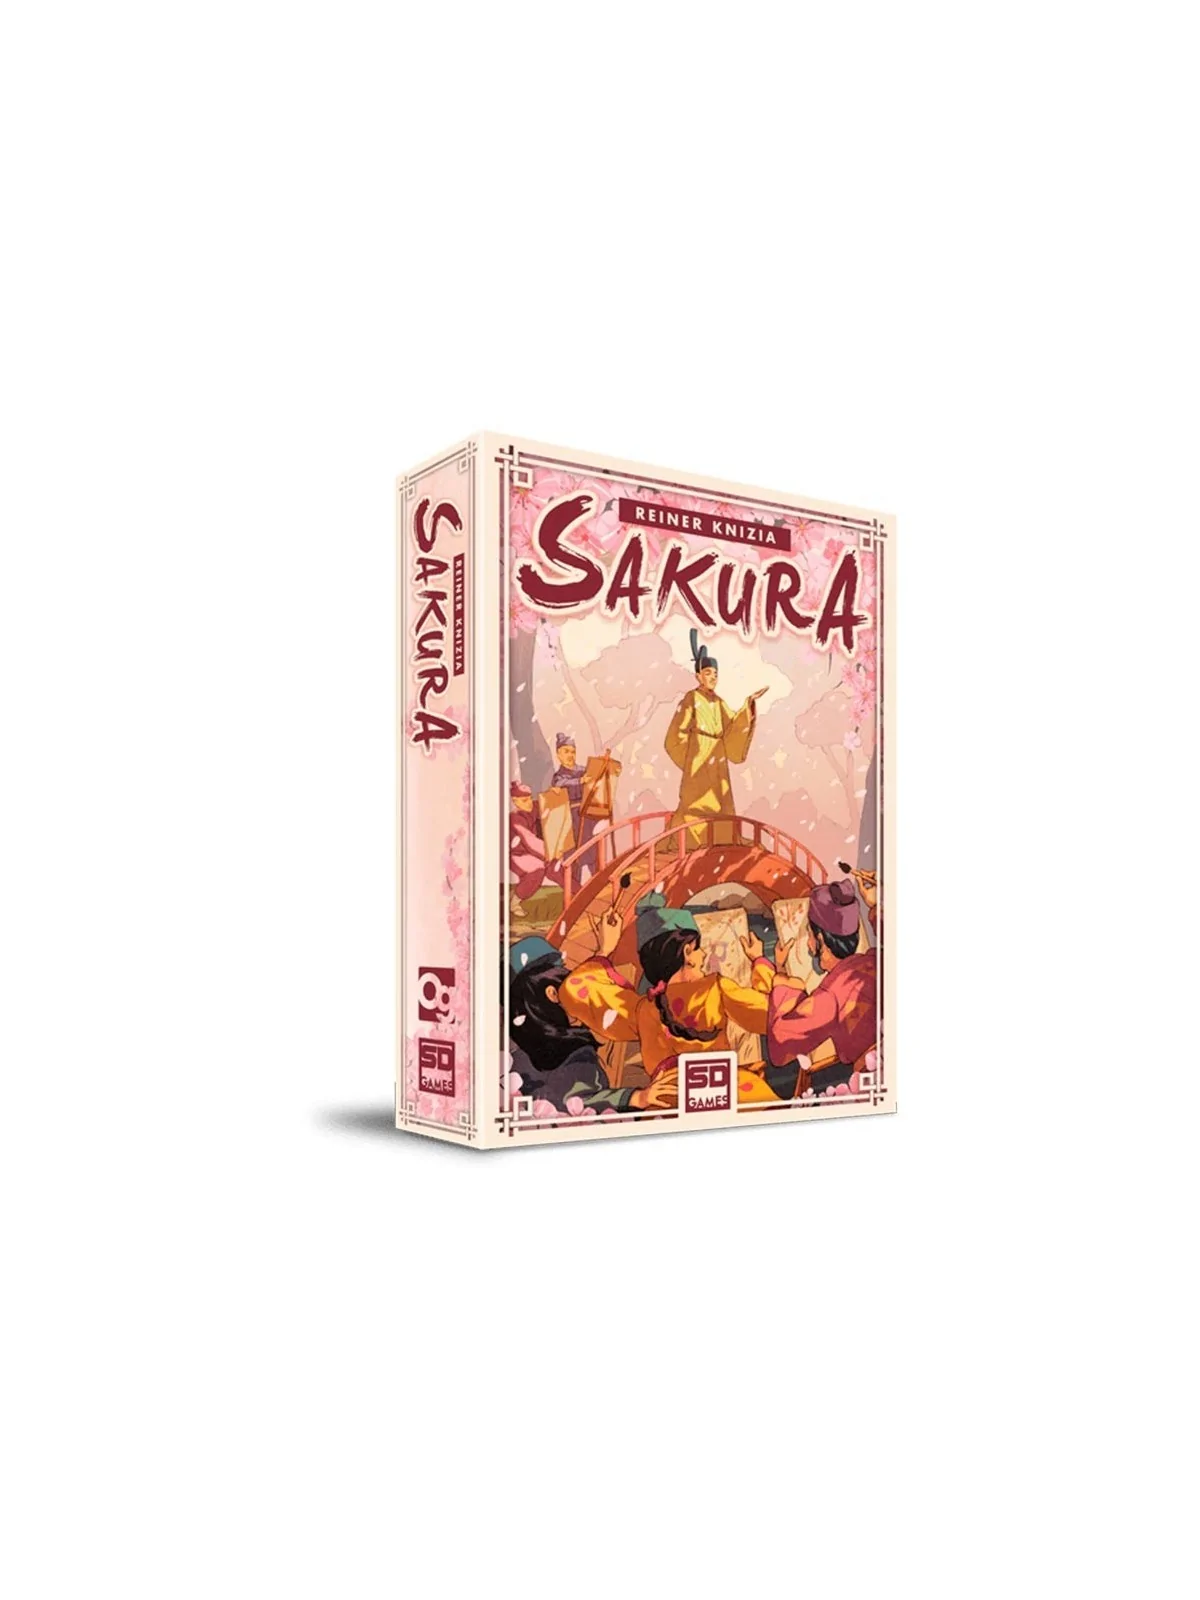 Comprar Sakura barato al mejor precio 17,96 € de SD GAMES